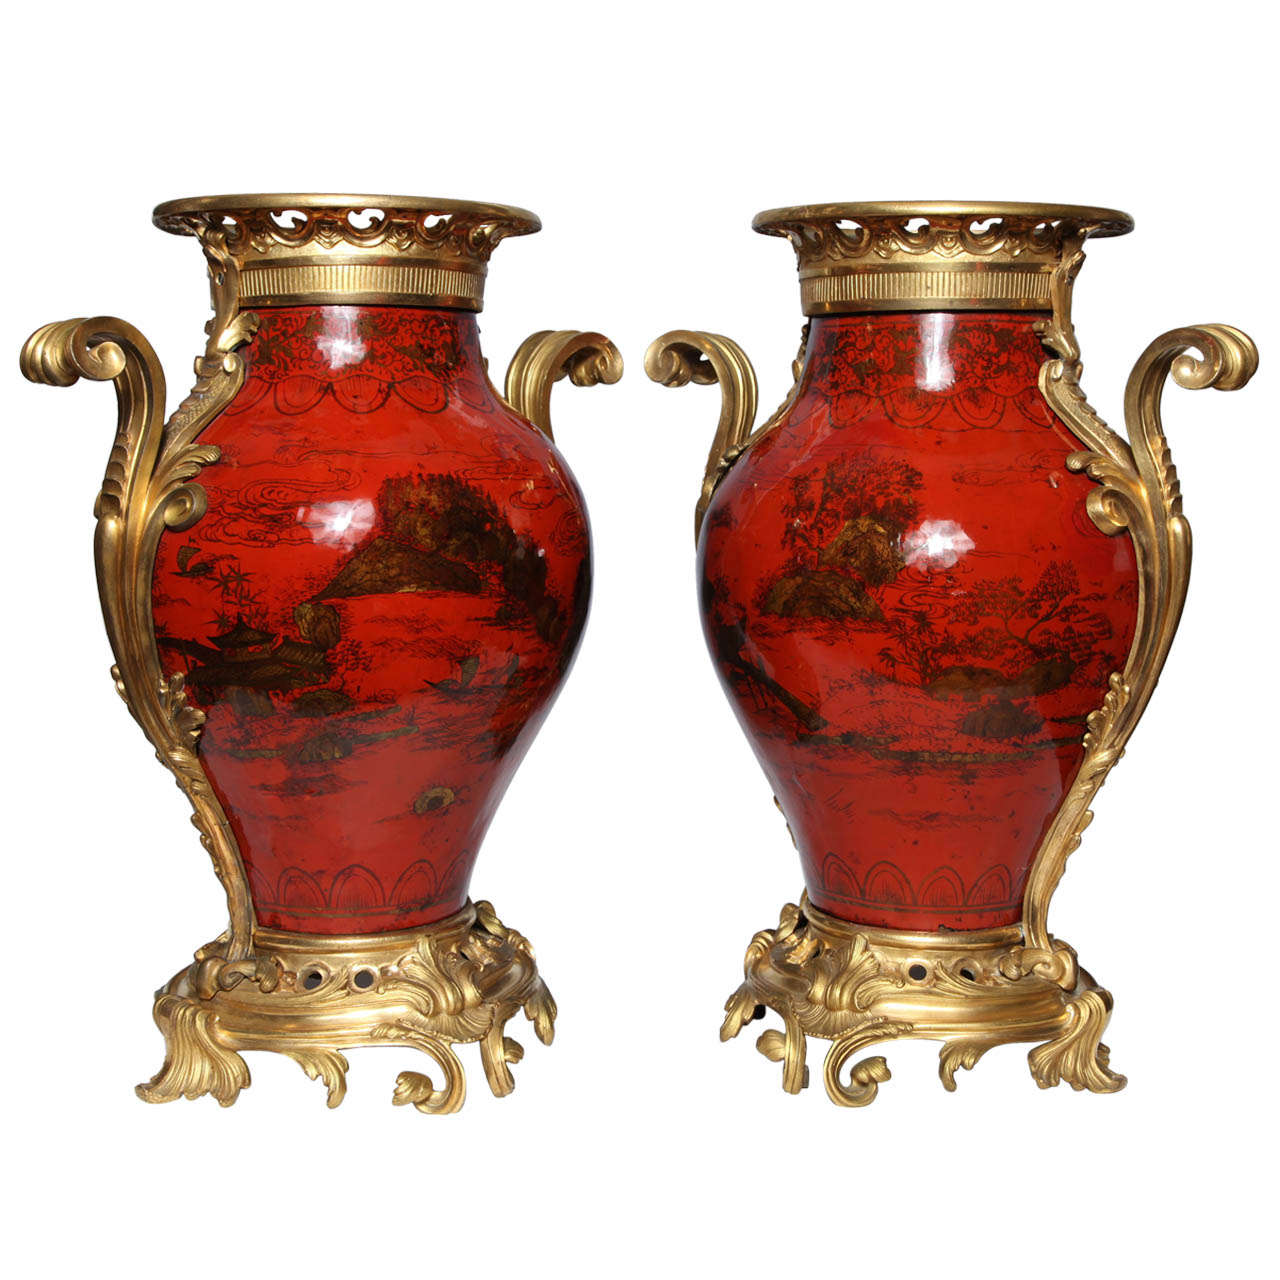 Grande paire de vases français laqués rouge, décorés de chinoiserie et montés en bronze doré